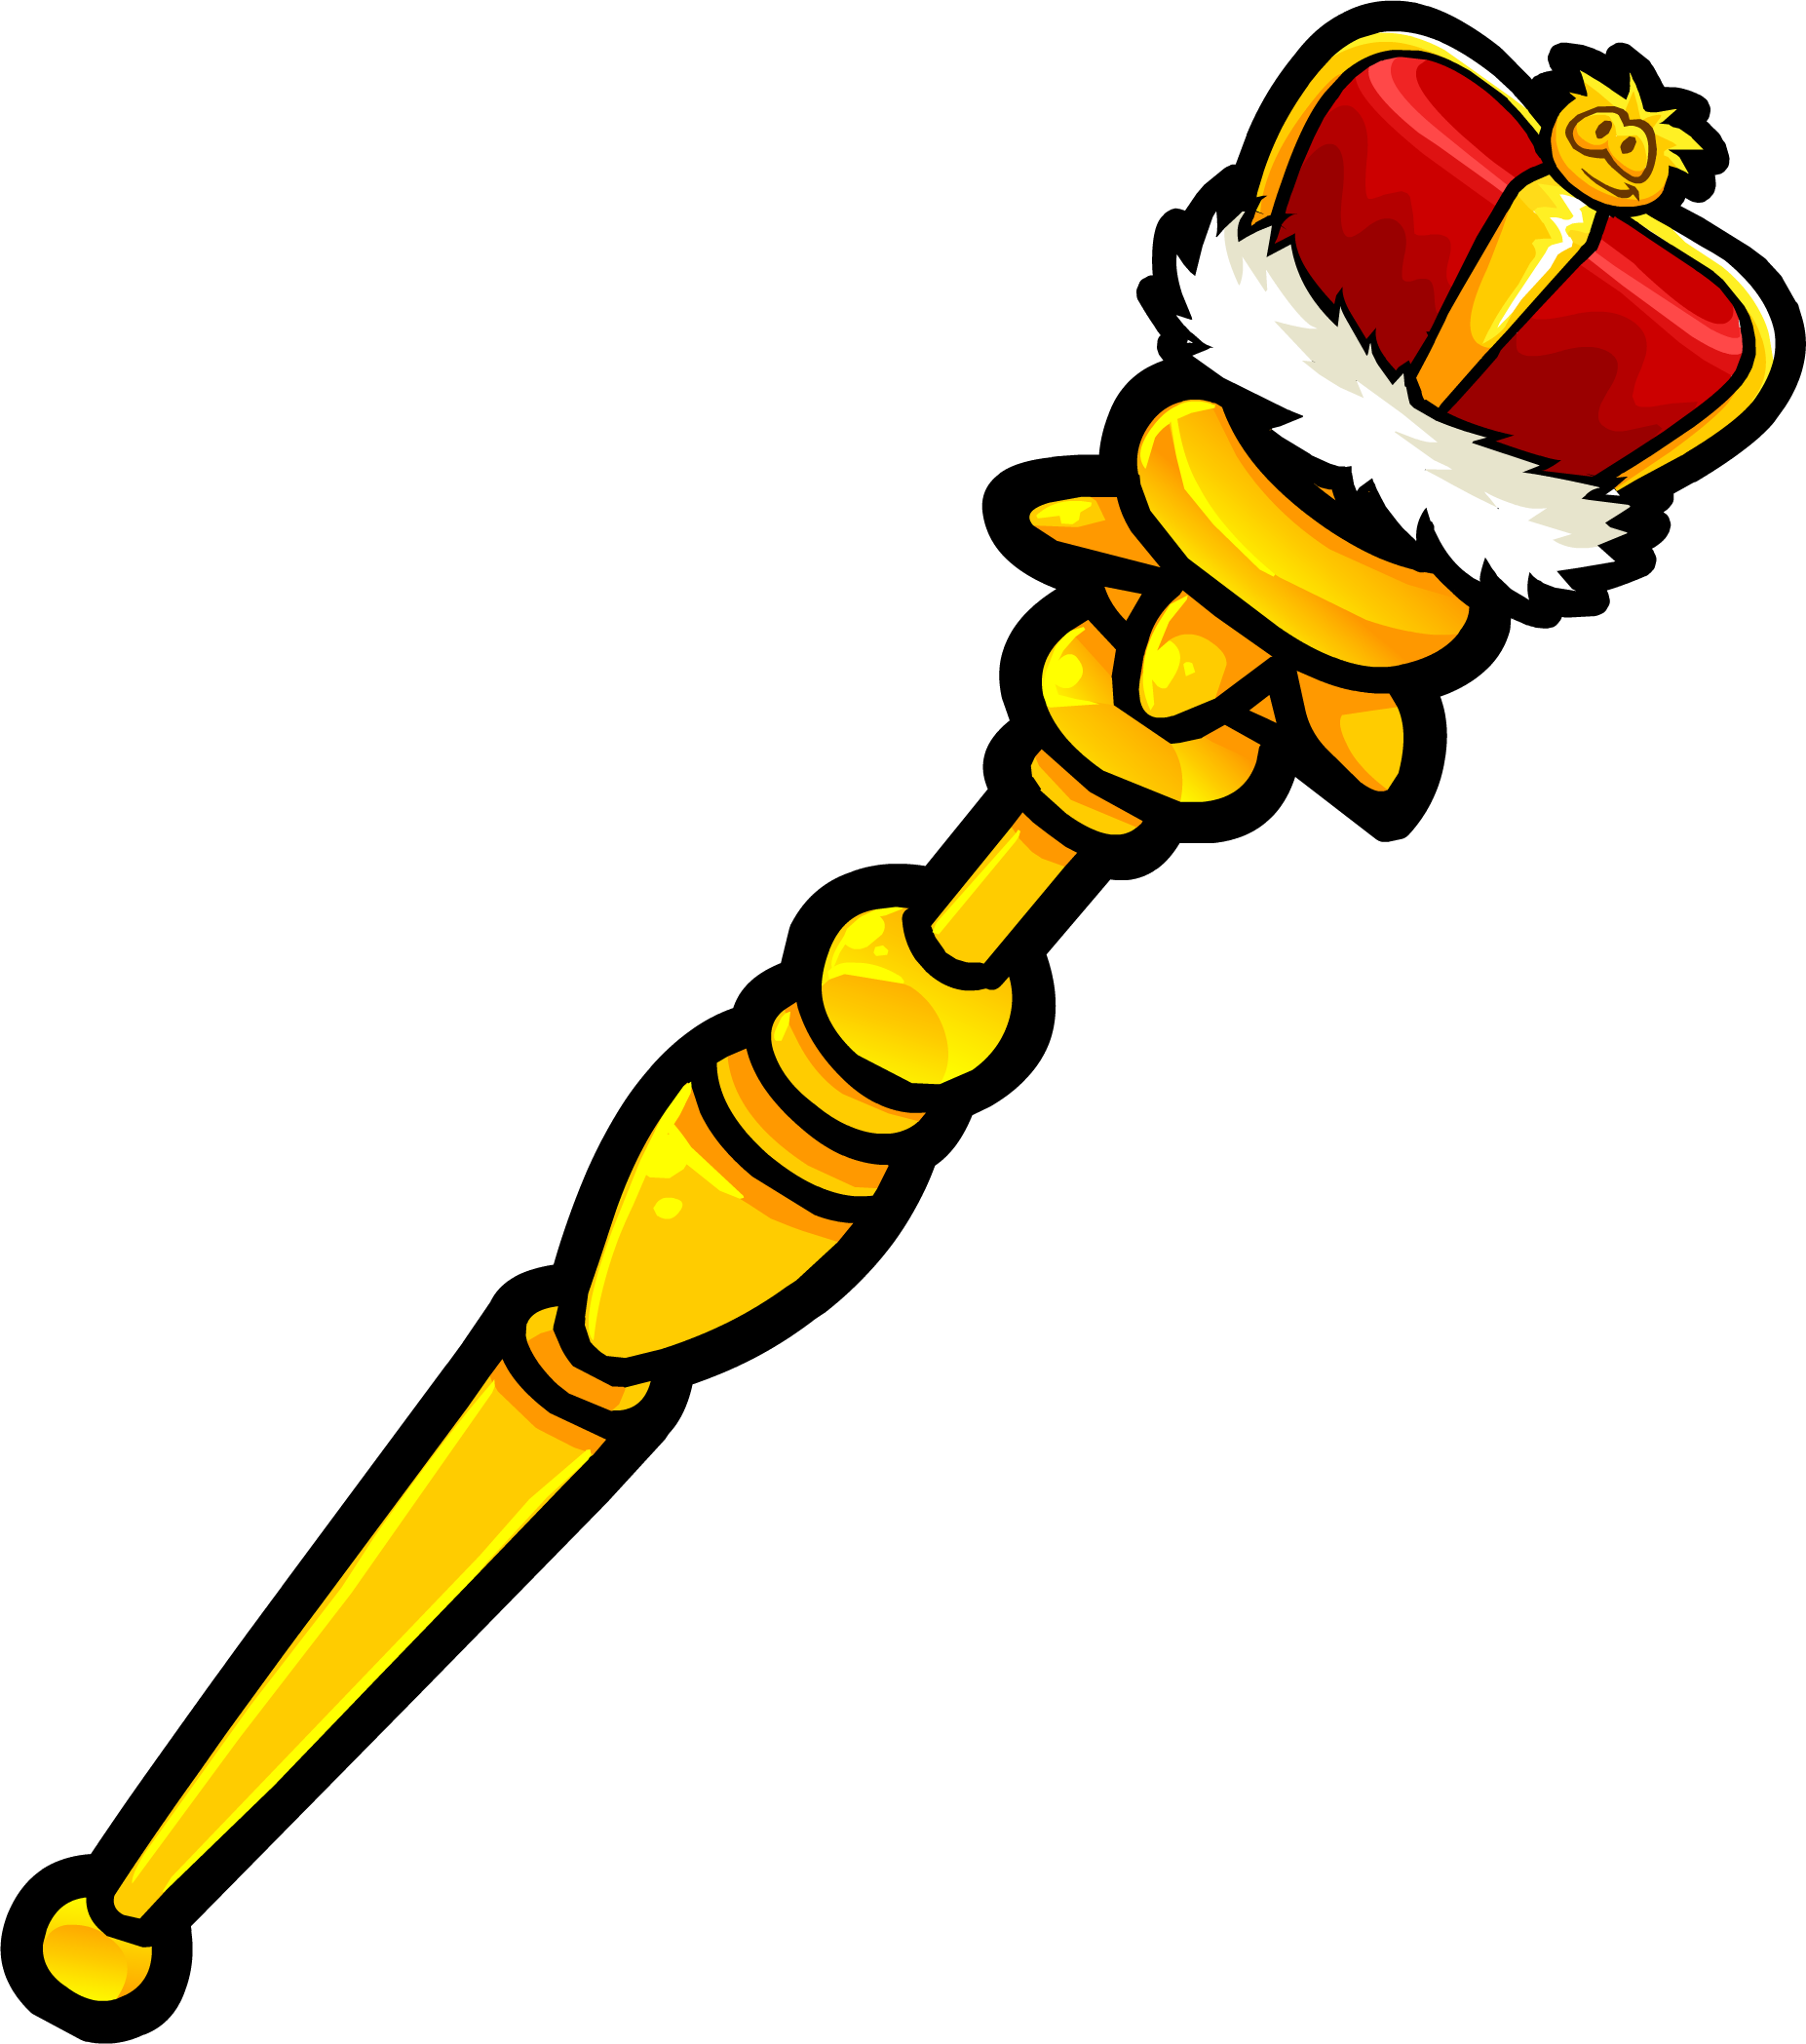 crown clipart sceptre